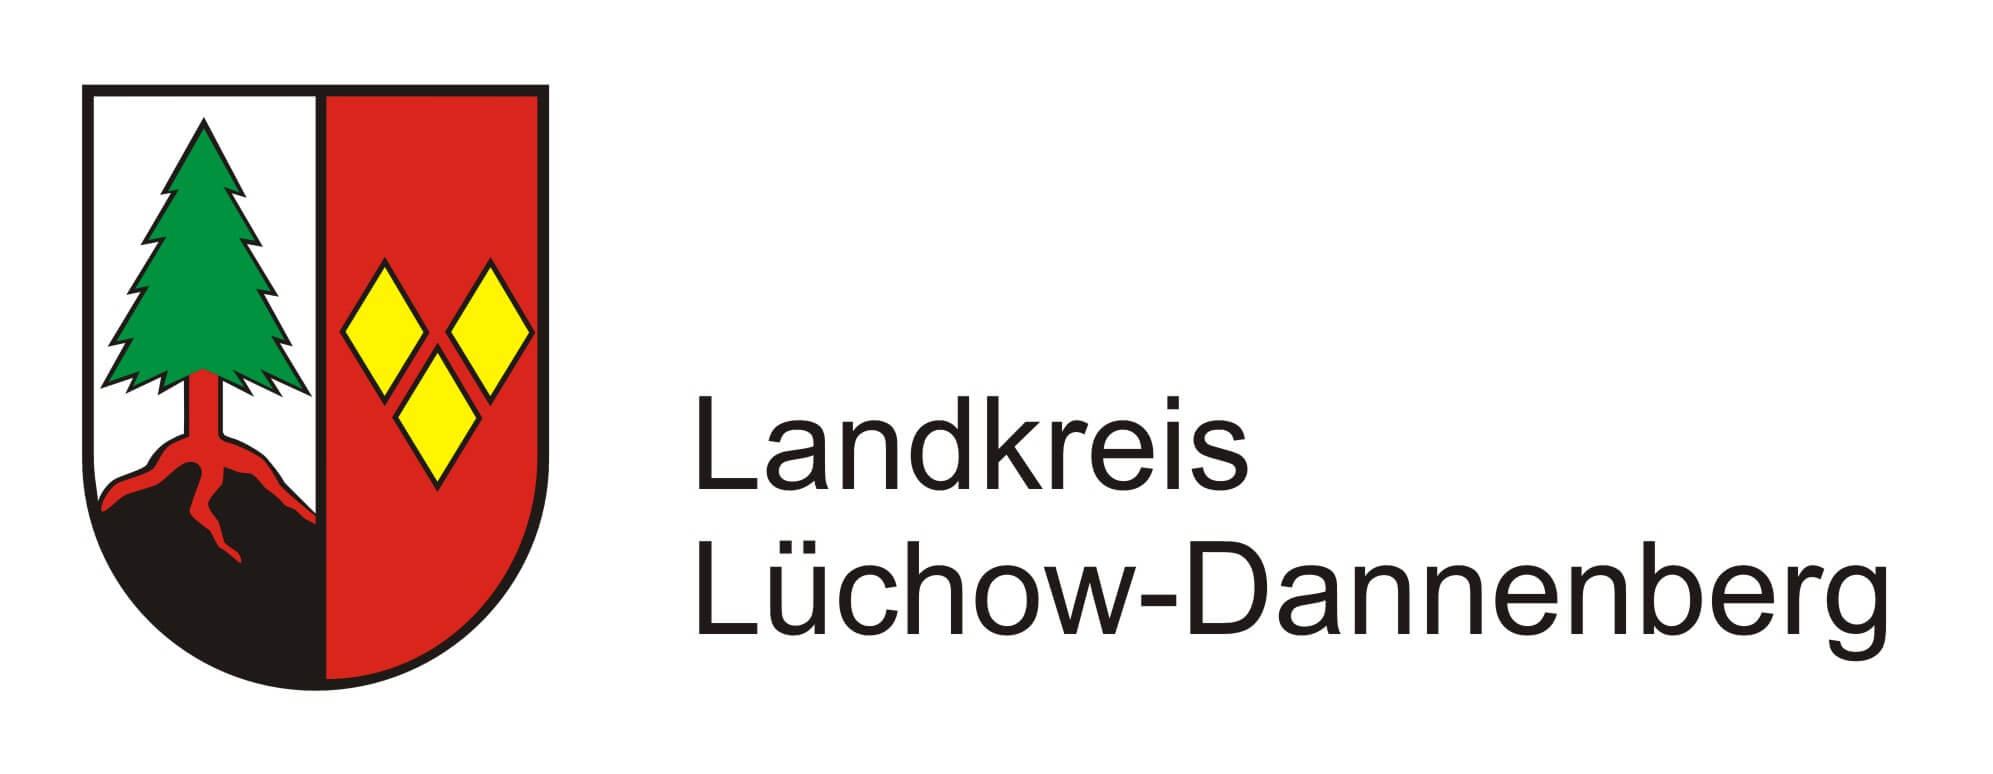 Lüchow Dannenberg